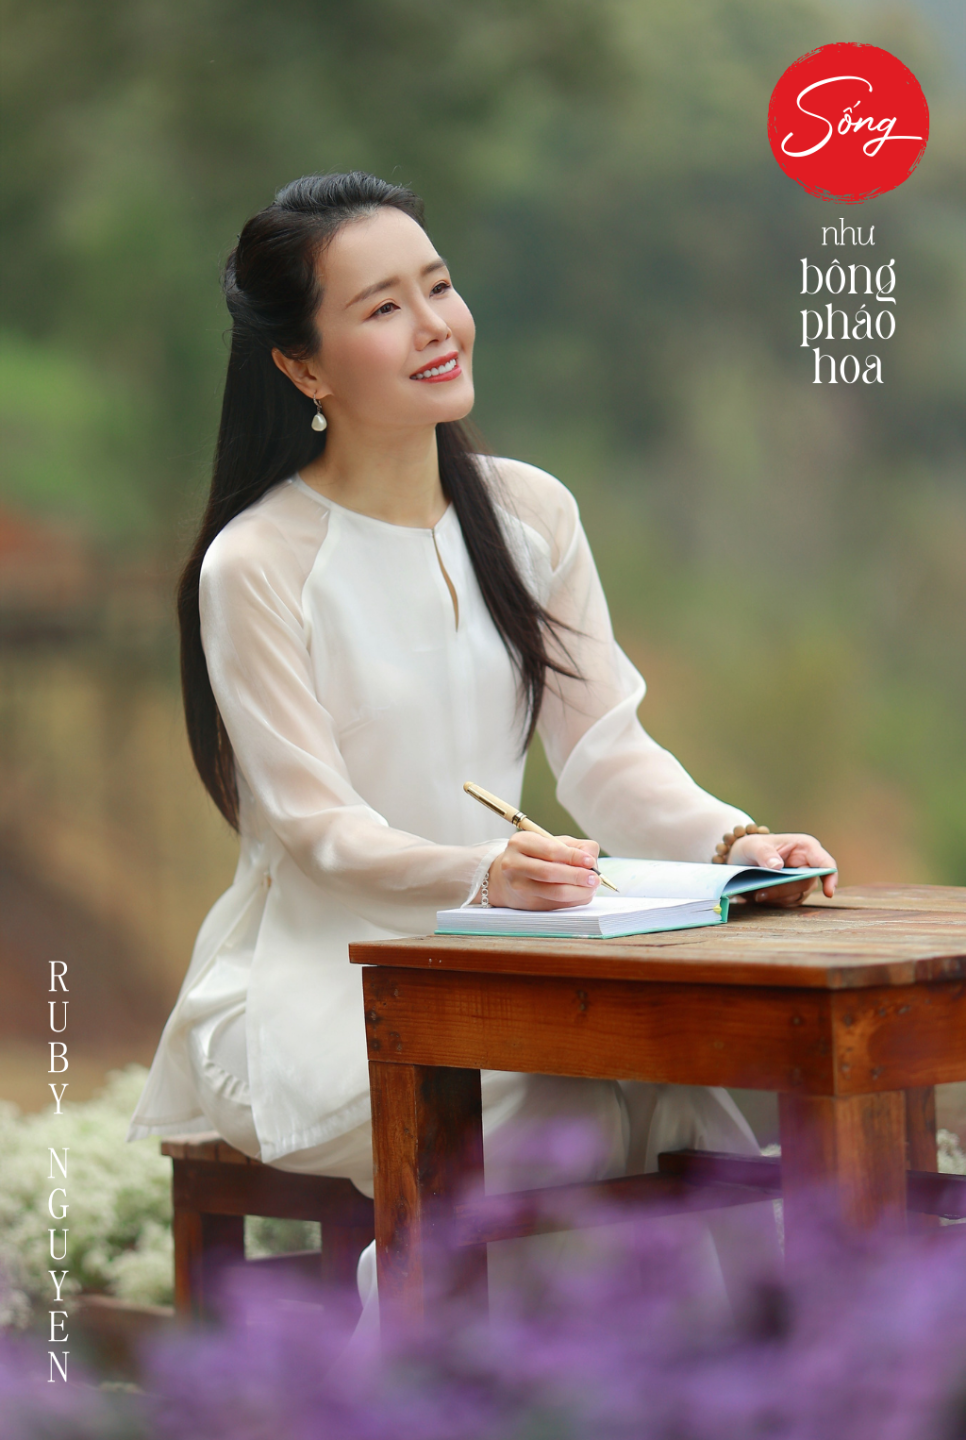 Ruby Nguyen - Tải Sách Sống như bông pháo hoa - Download Ebook Free PDF